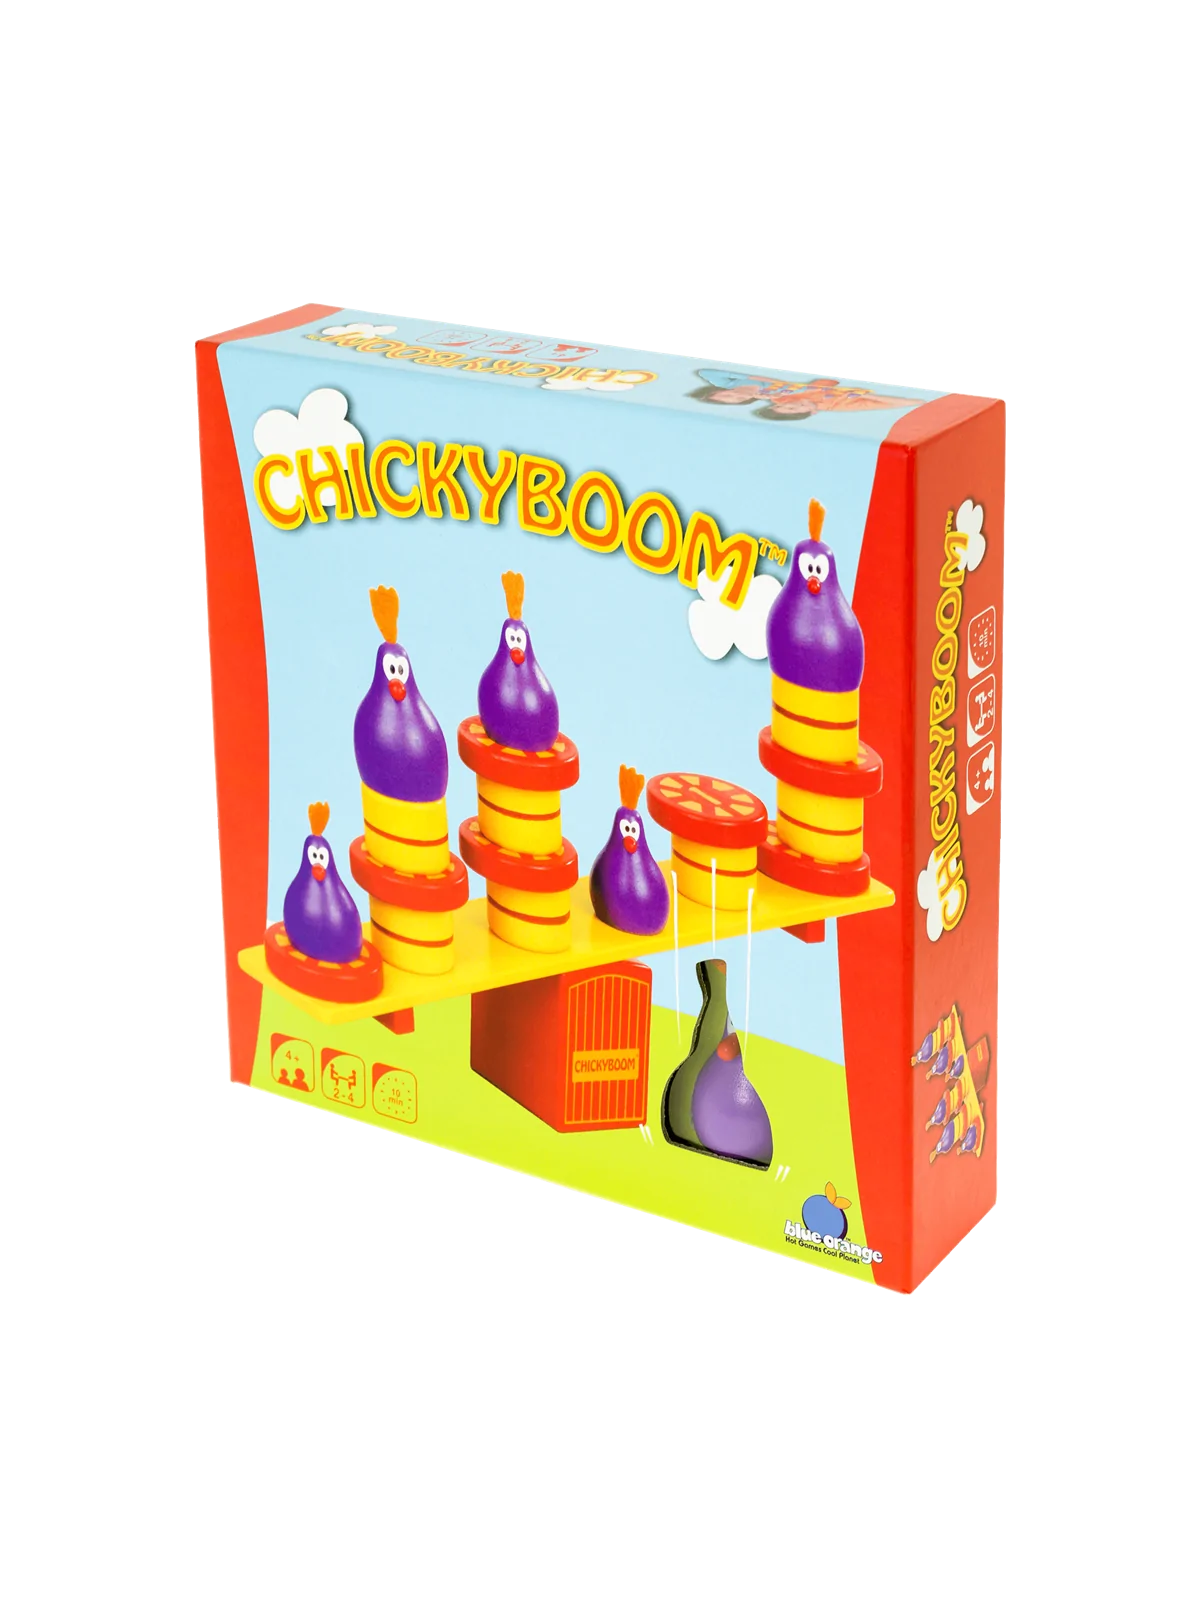 Comprar Chicky Boom barato al mejor precio 26,99 € de Blue Orange Game